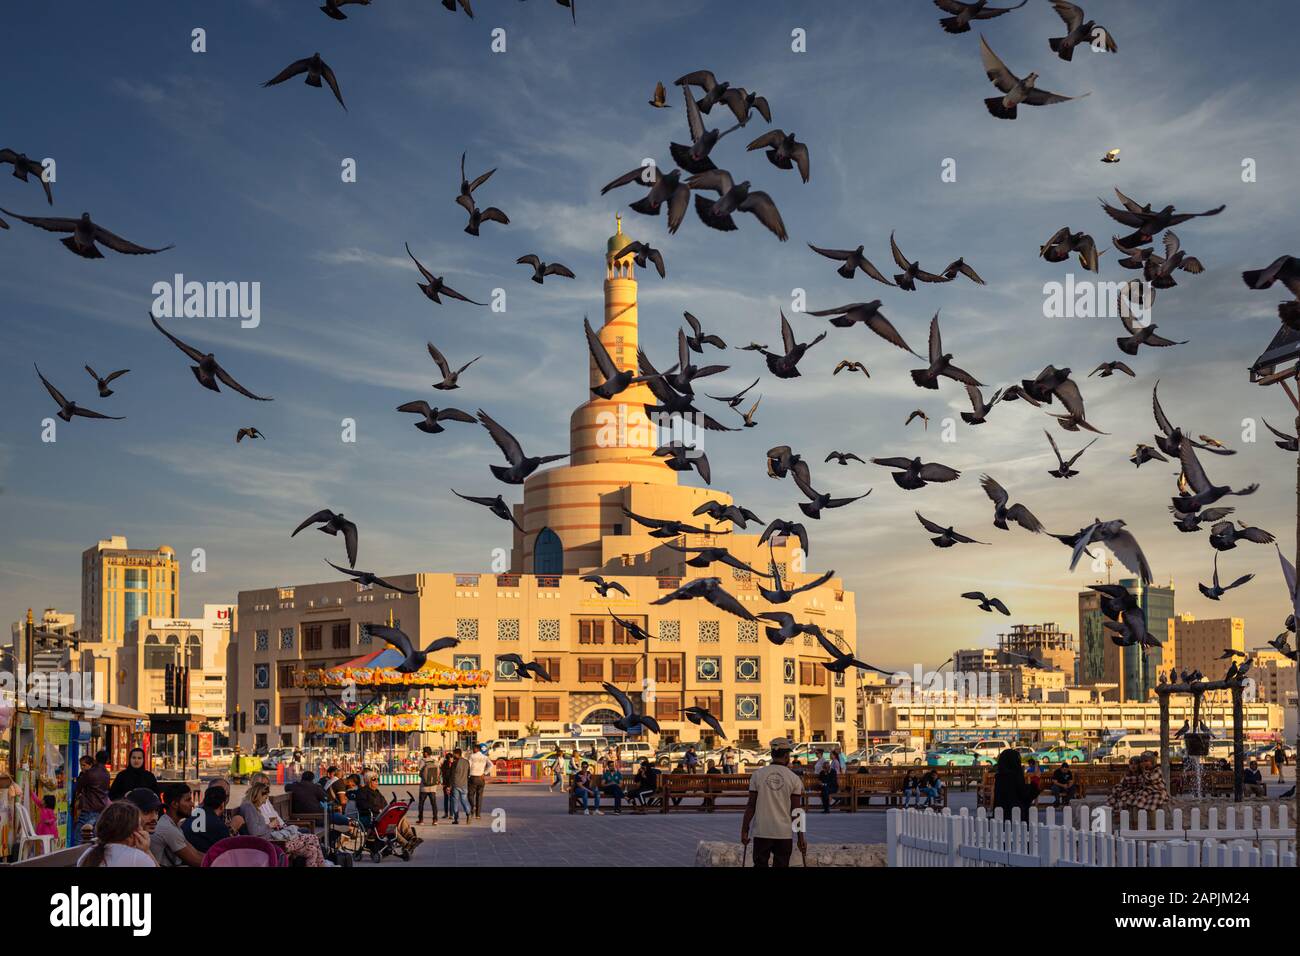 Doha, Qatar - 21 gennaio 2020: Al-Fanar Qatar Islamic Cultural Center la vista del giorno con piccioni che volano nel cielo in primo piano e nuvole nel cielo Foto Stock